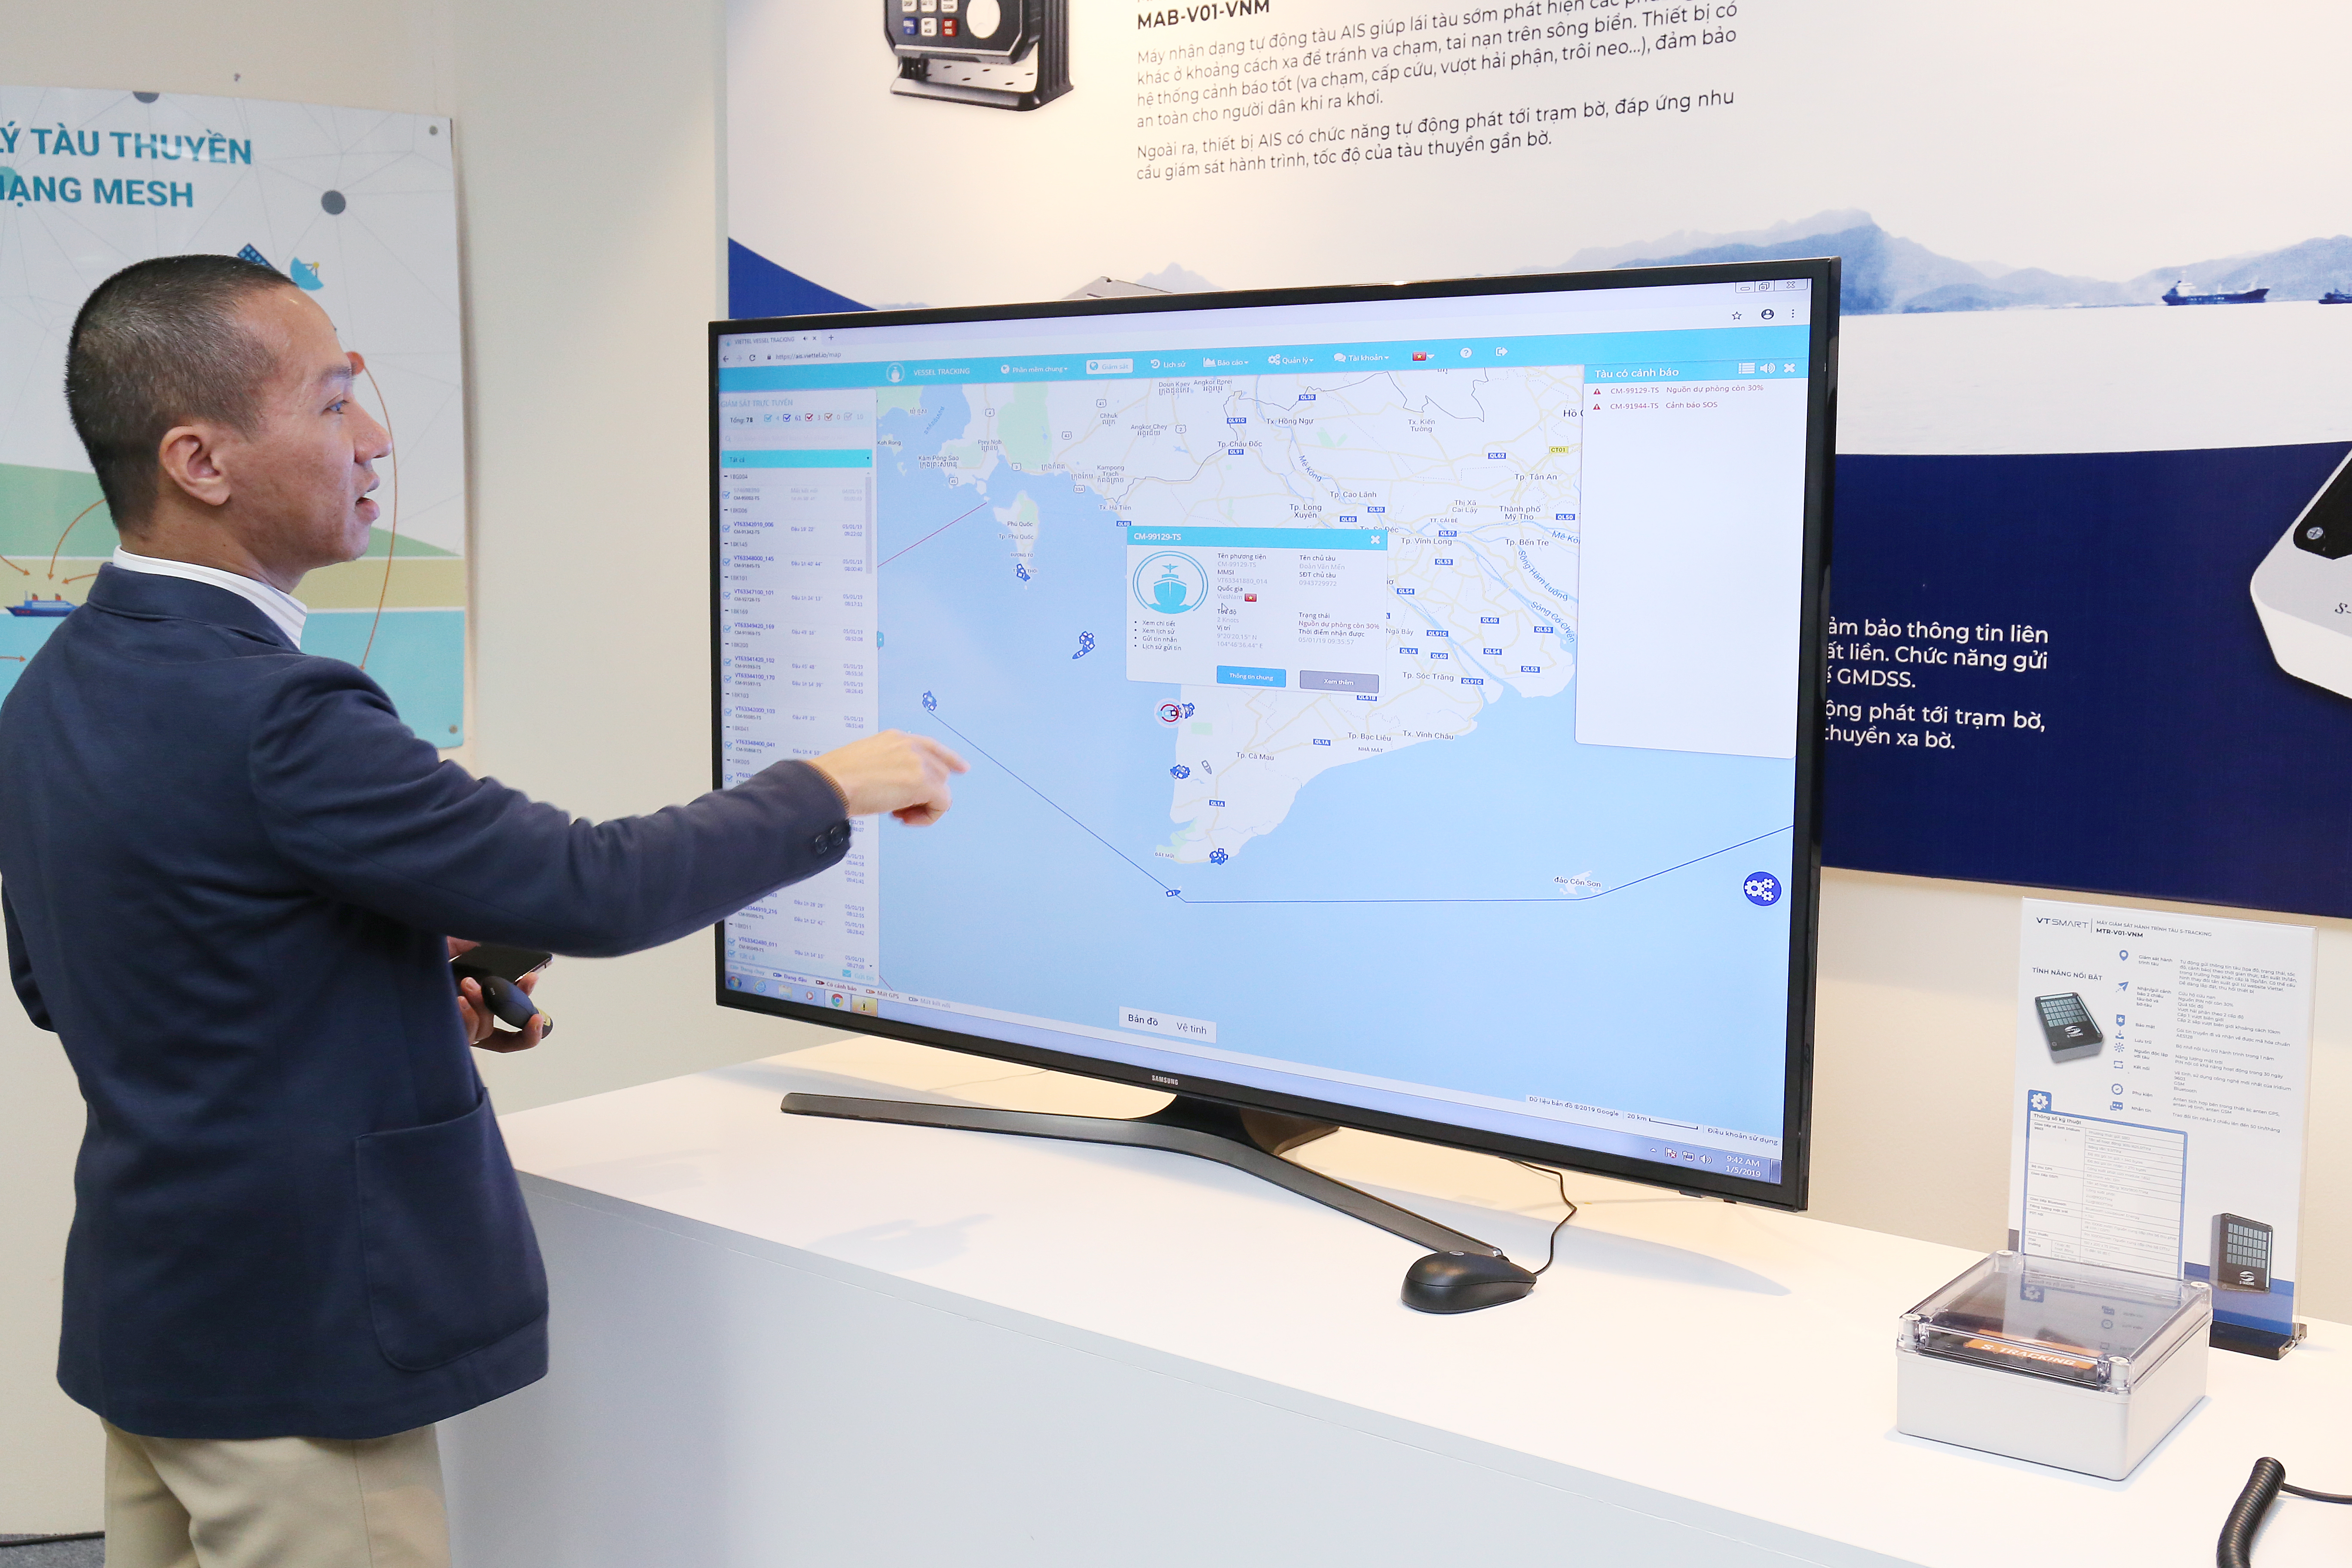 Anh Nguyễn Công Dũng, trưởng phòng Công nghệ và Hợp tác quốc tế, Trung tâm Công nghệ mạng Viettel, giới thiệu về giao diện quan sát của S-tracking dành cho nhà quản lý, chủ tàu. 